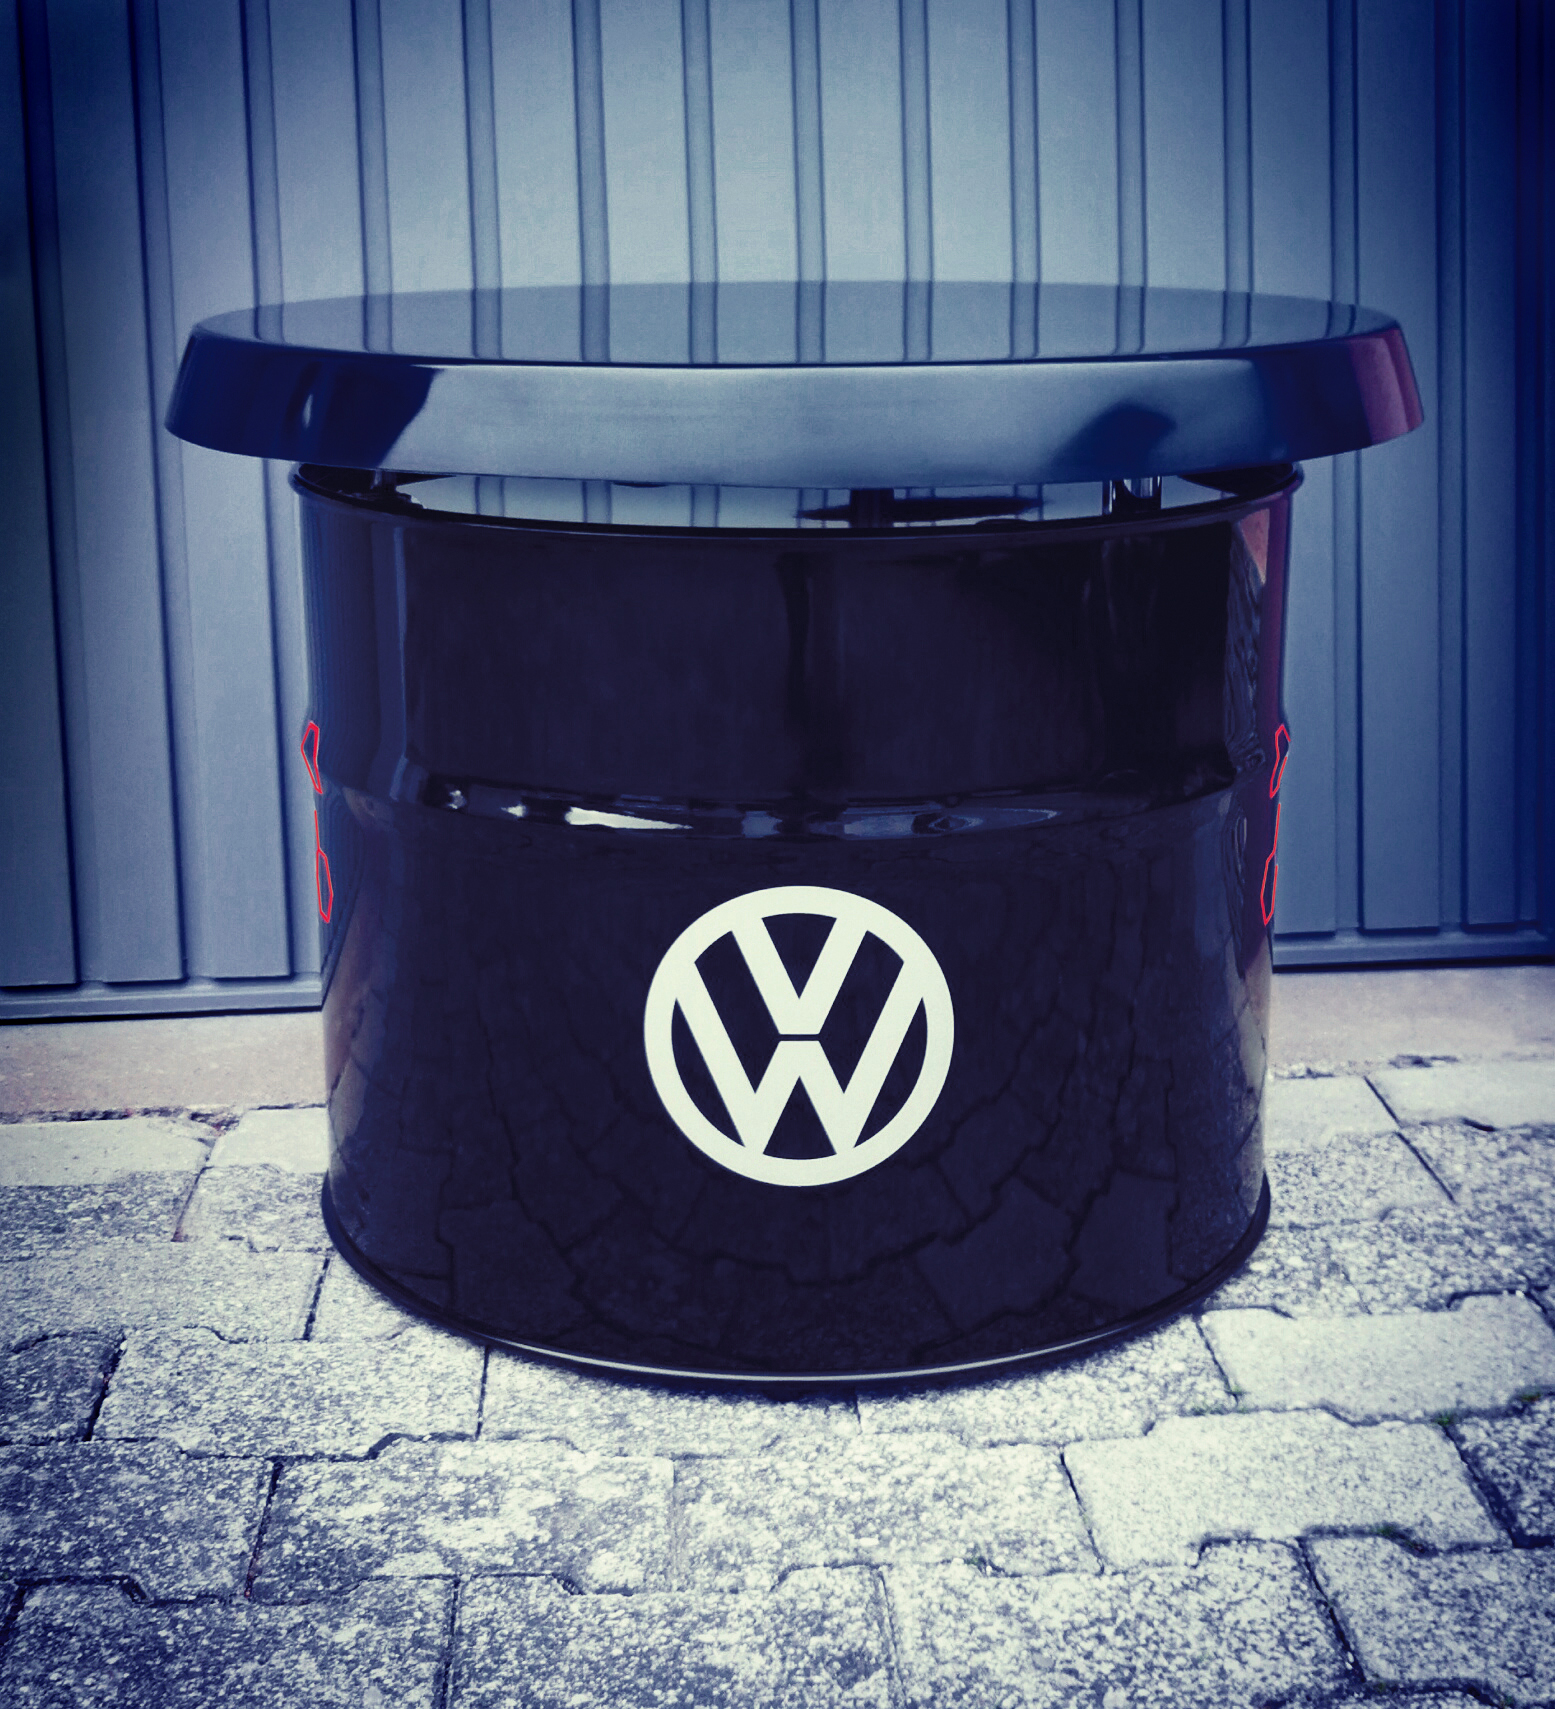 VW GTI oil barrel table